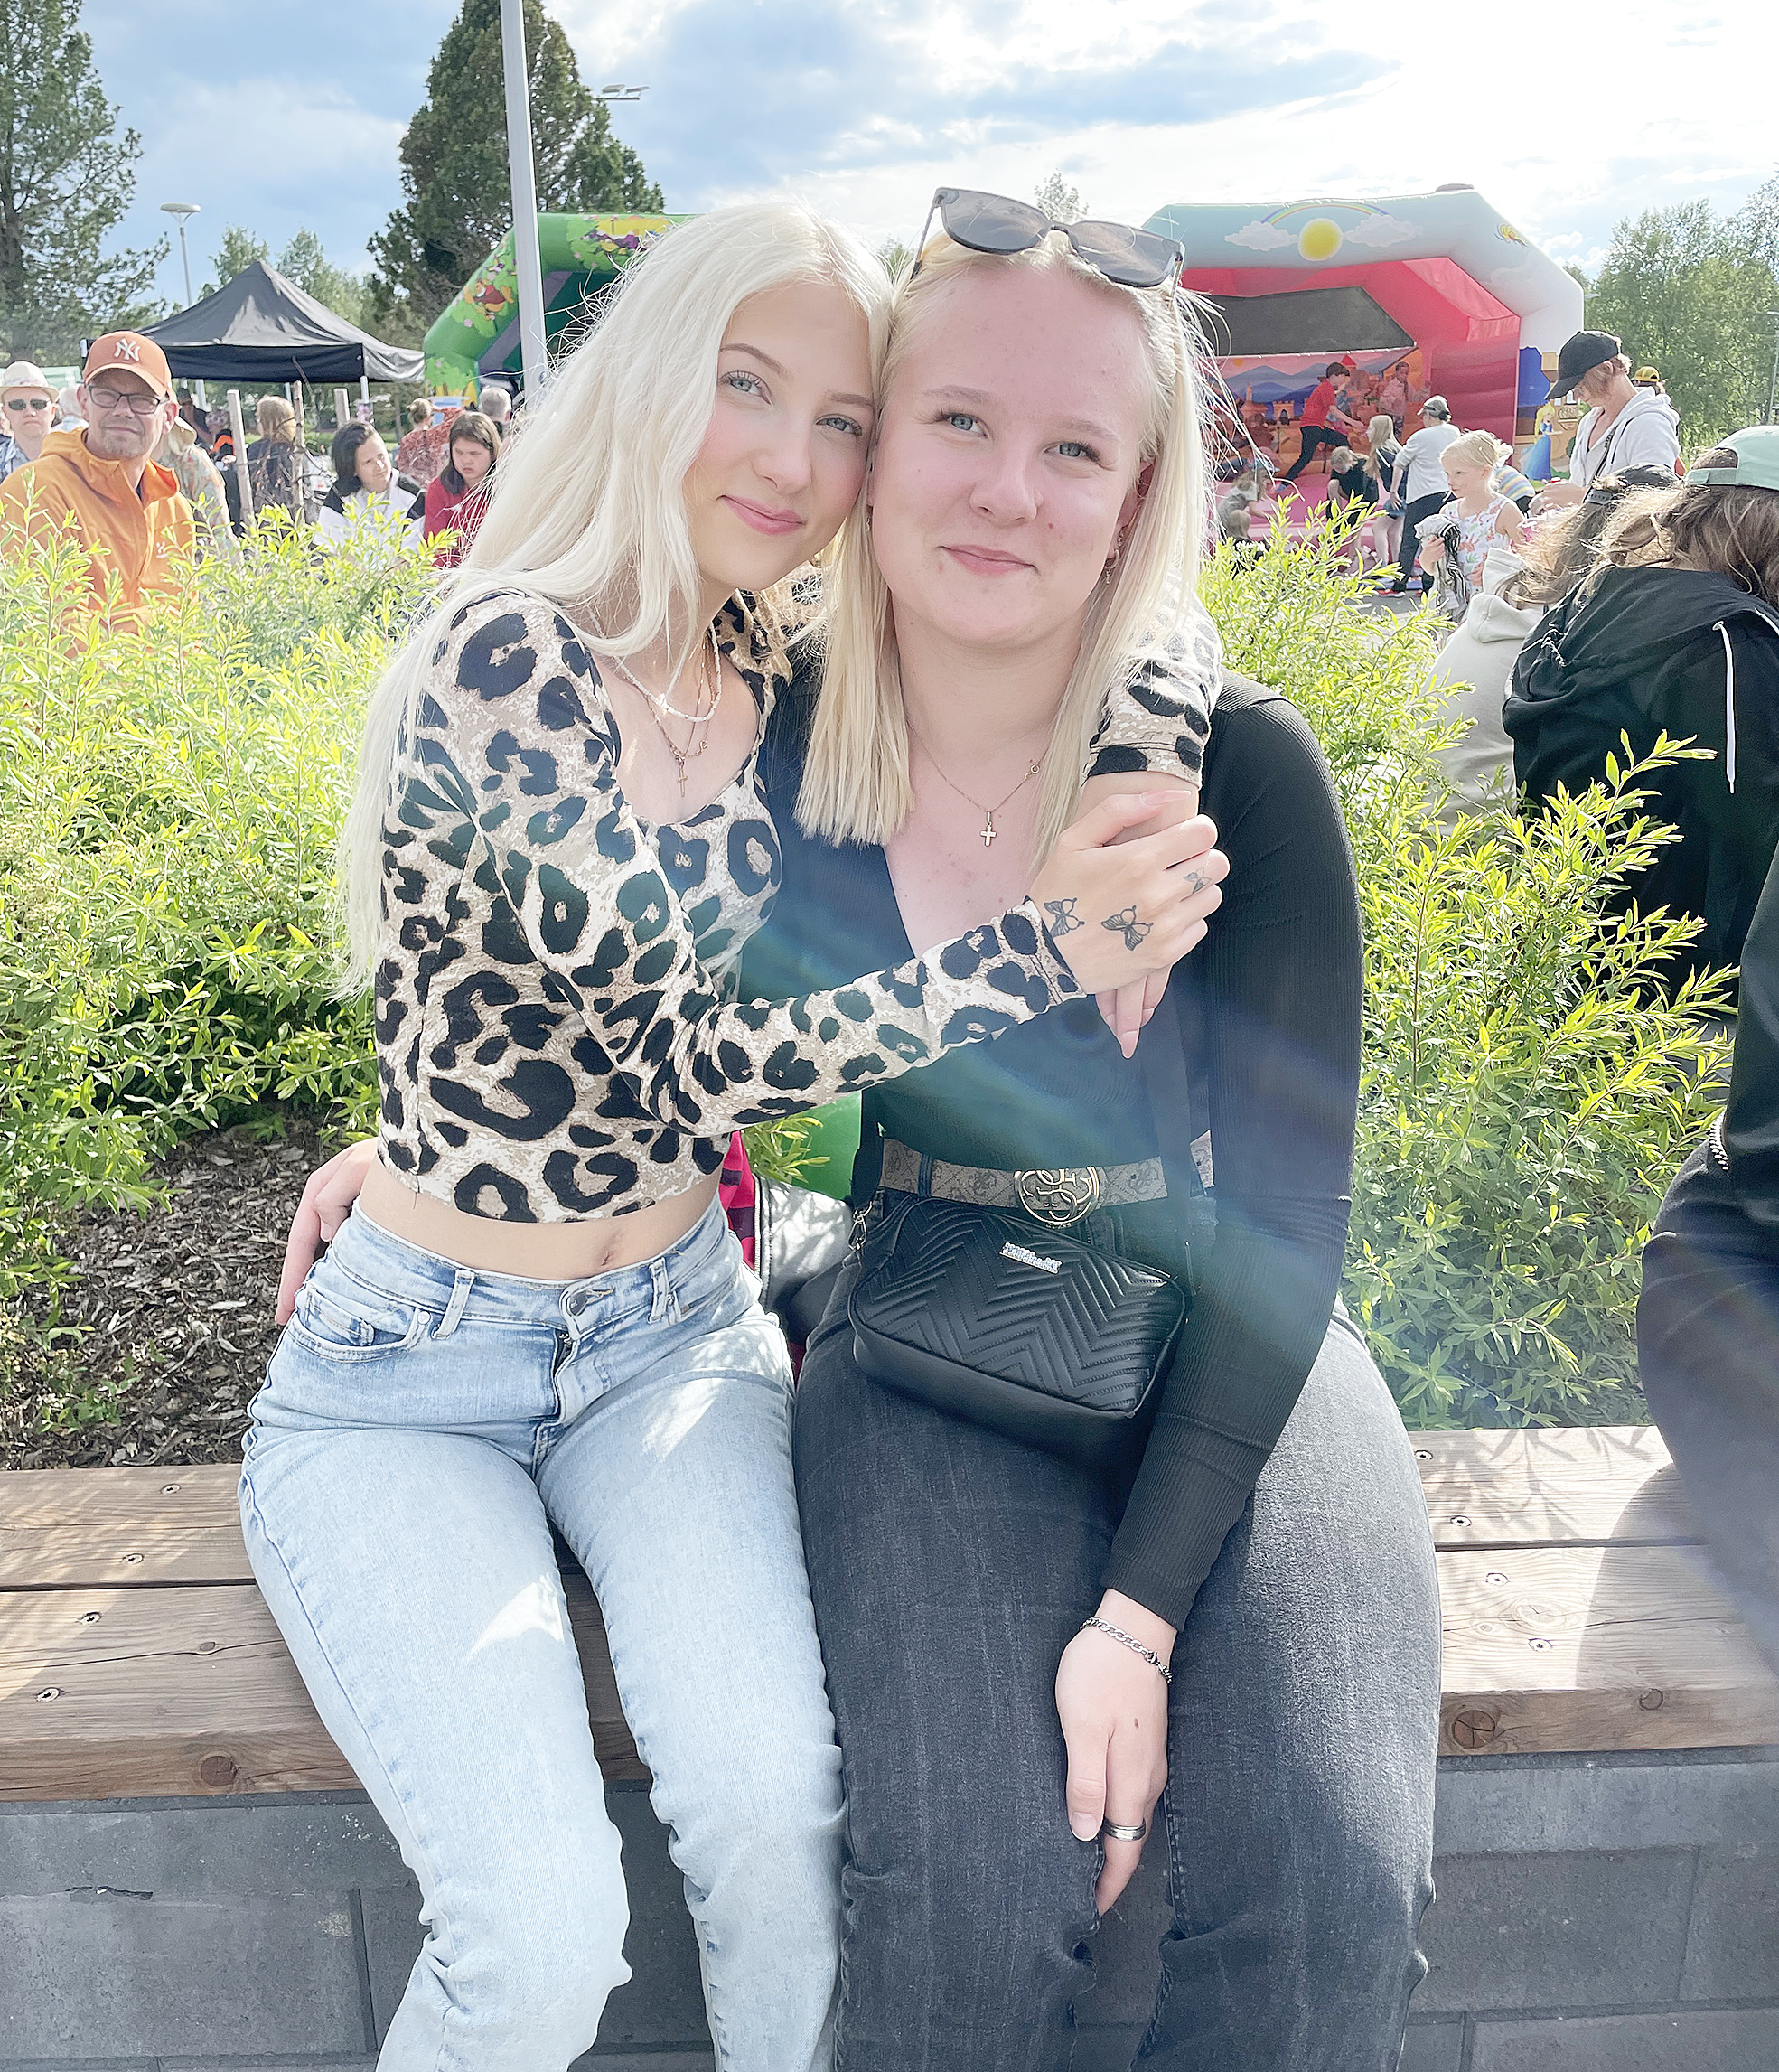 Reeta Halonen ja Aino Hiltunen nauttimassa musiikista kesäiltana.
